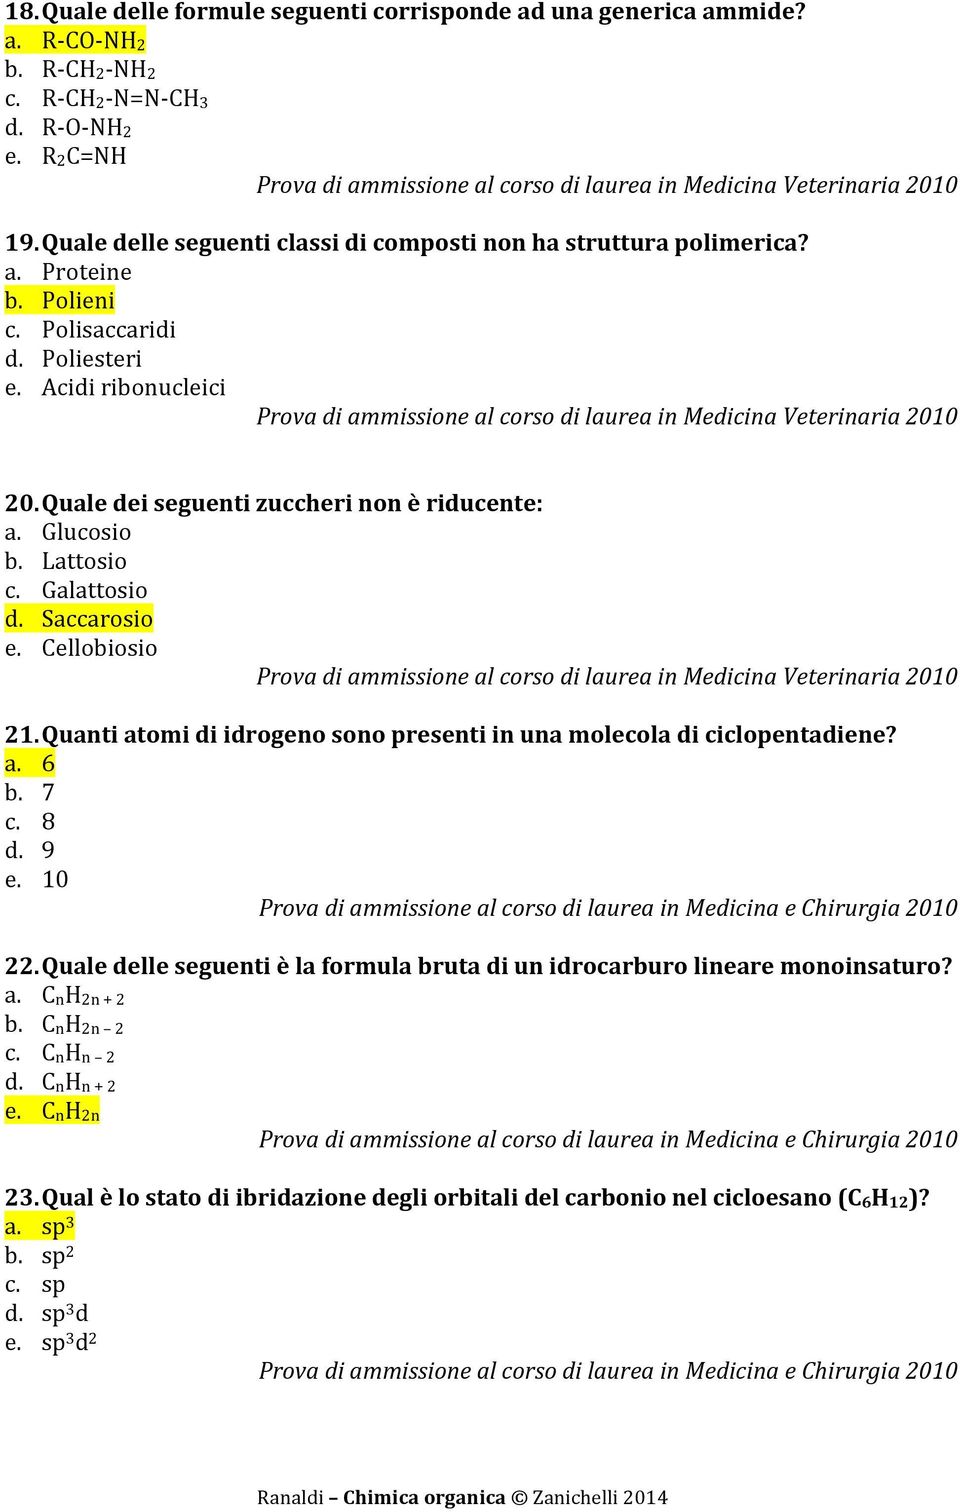 Quale dei seguenti zuccheri non è riducente: a. Glucosio b. Lattosio c. Galattosio d. Saccarosio e. Cellobiosio 21. Quanti atomi di idrogeno sono presenti in una molecola di ciclopentadiene? a. 6 b.